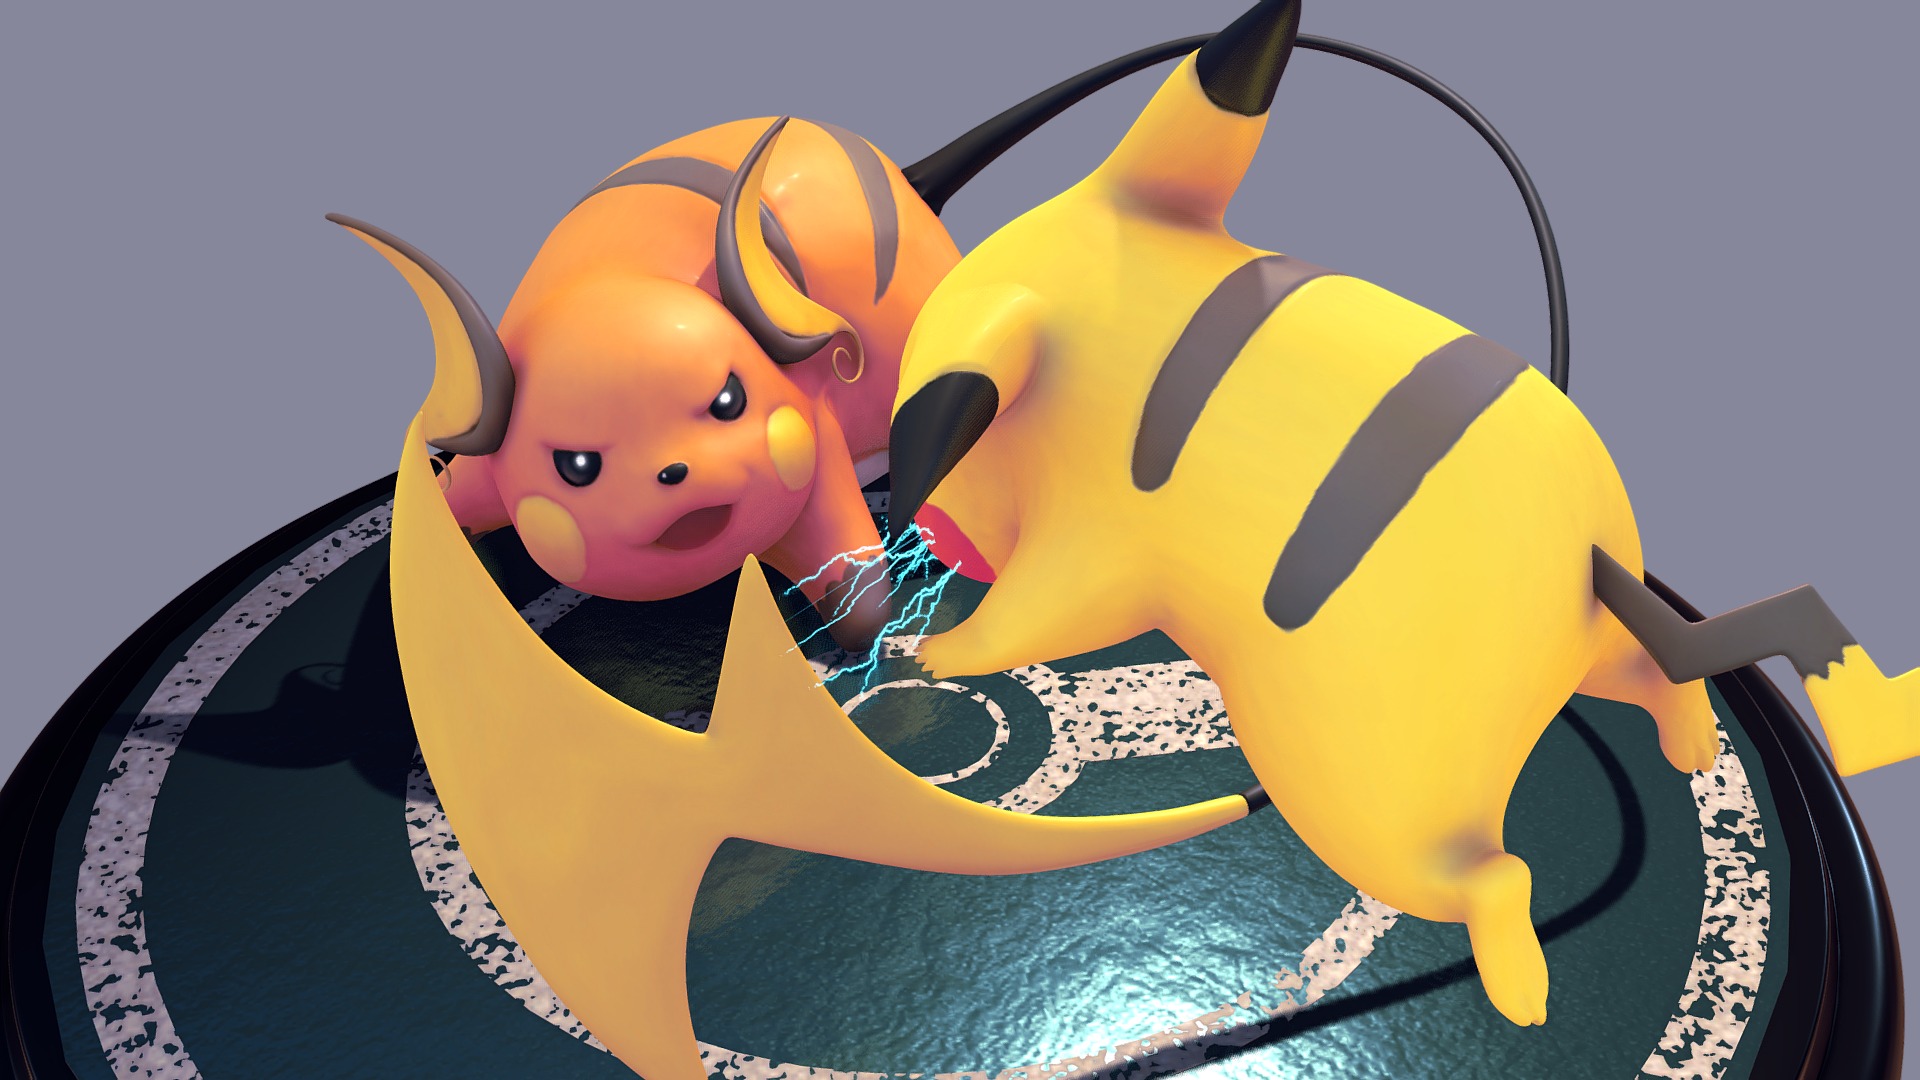 Pikachu VS Raichu - pokemon - 3D model by graograman 3d model